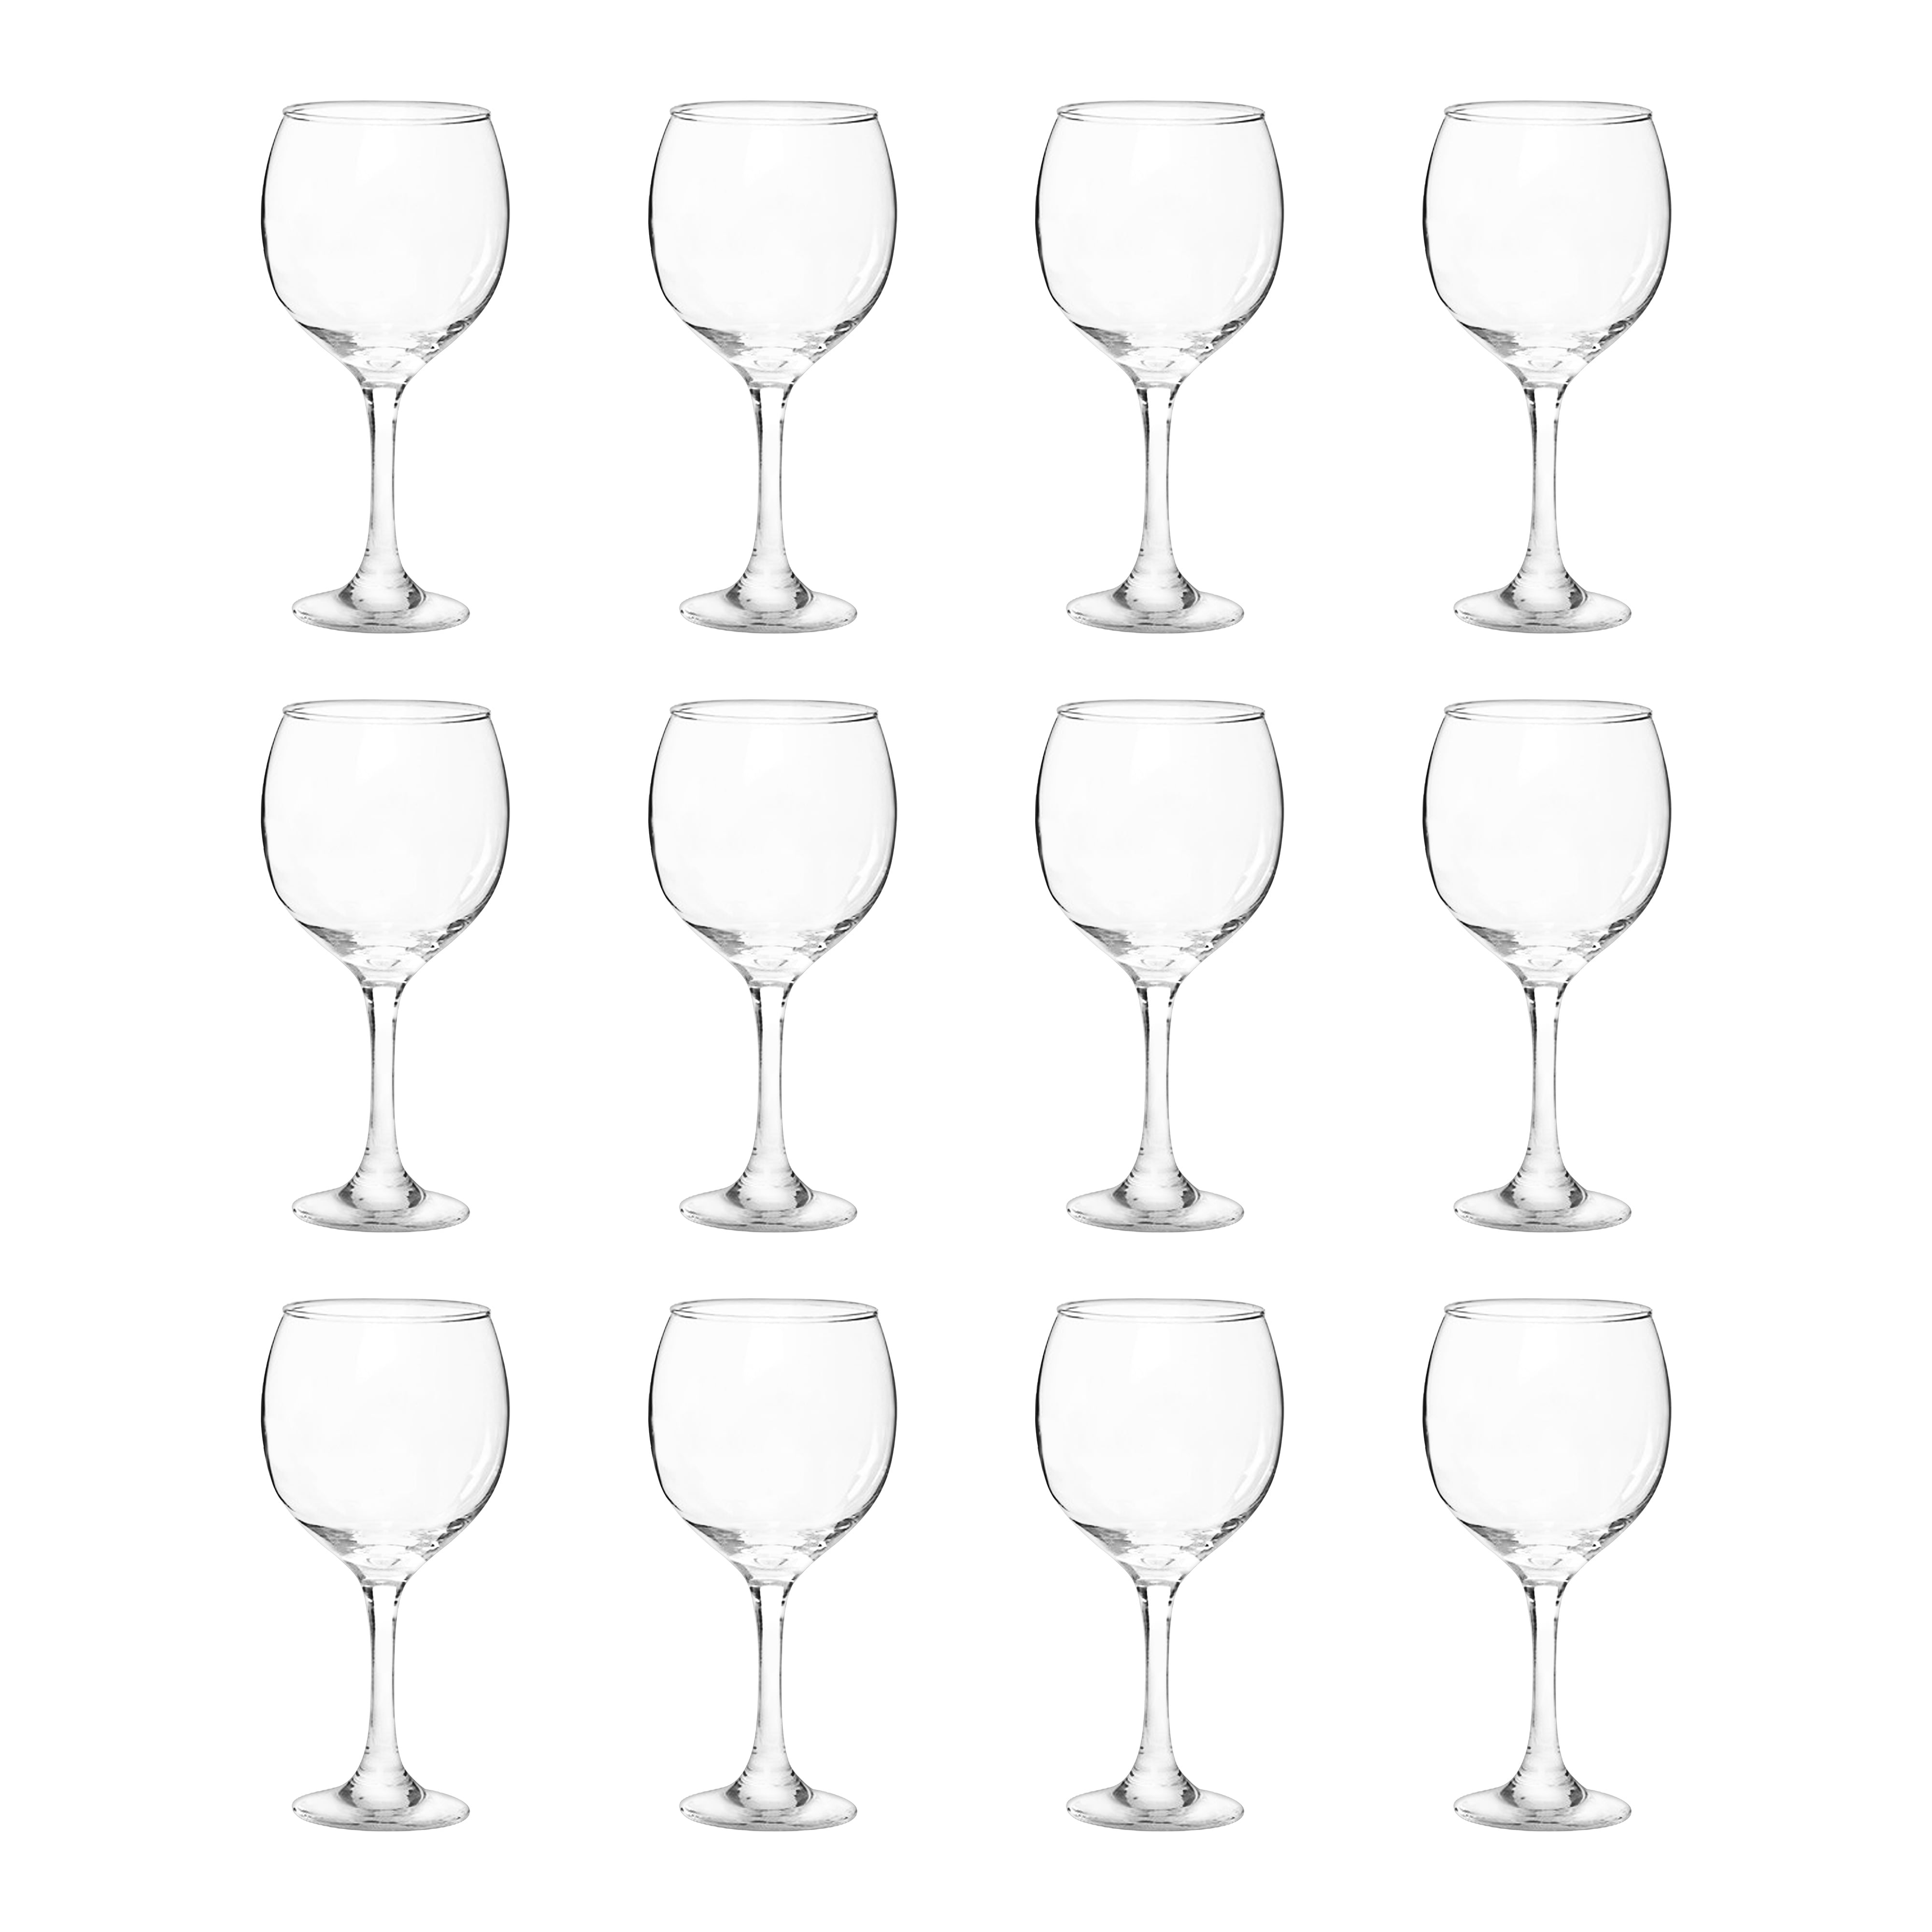 Red vs. White Wine Glasses